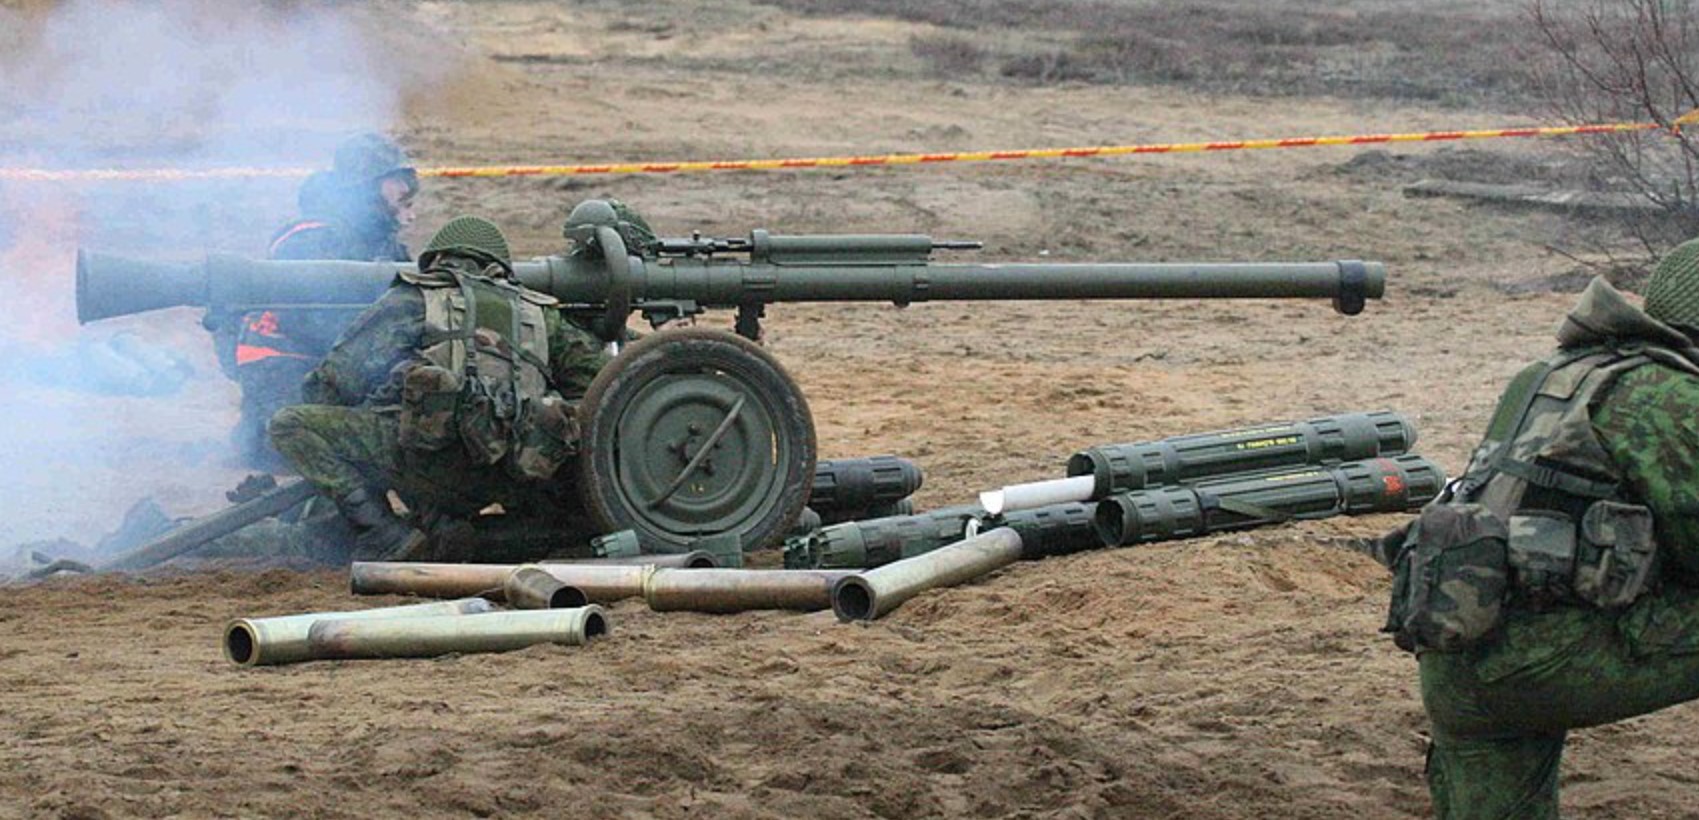 Безвідкотна гармата “Pansarvärnspjäs 1110” (“PV-1110”) військових Литви. 2010 рік. Литва. Фото з відкритих джерел